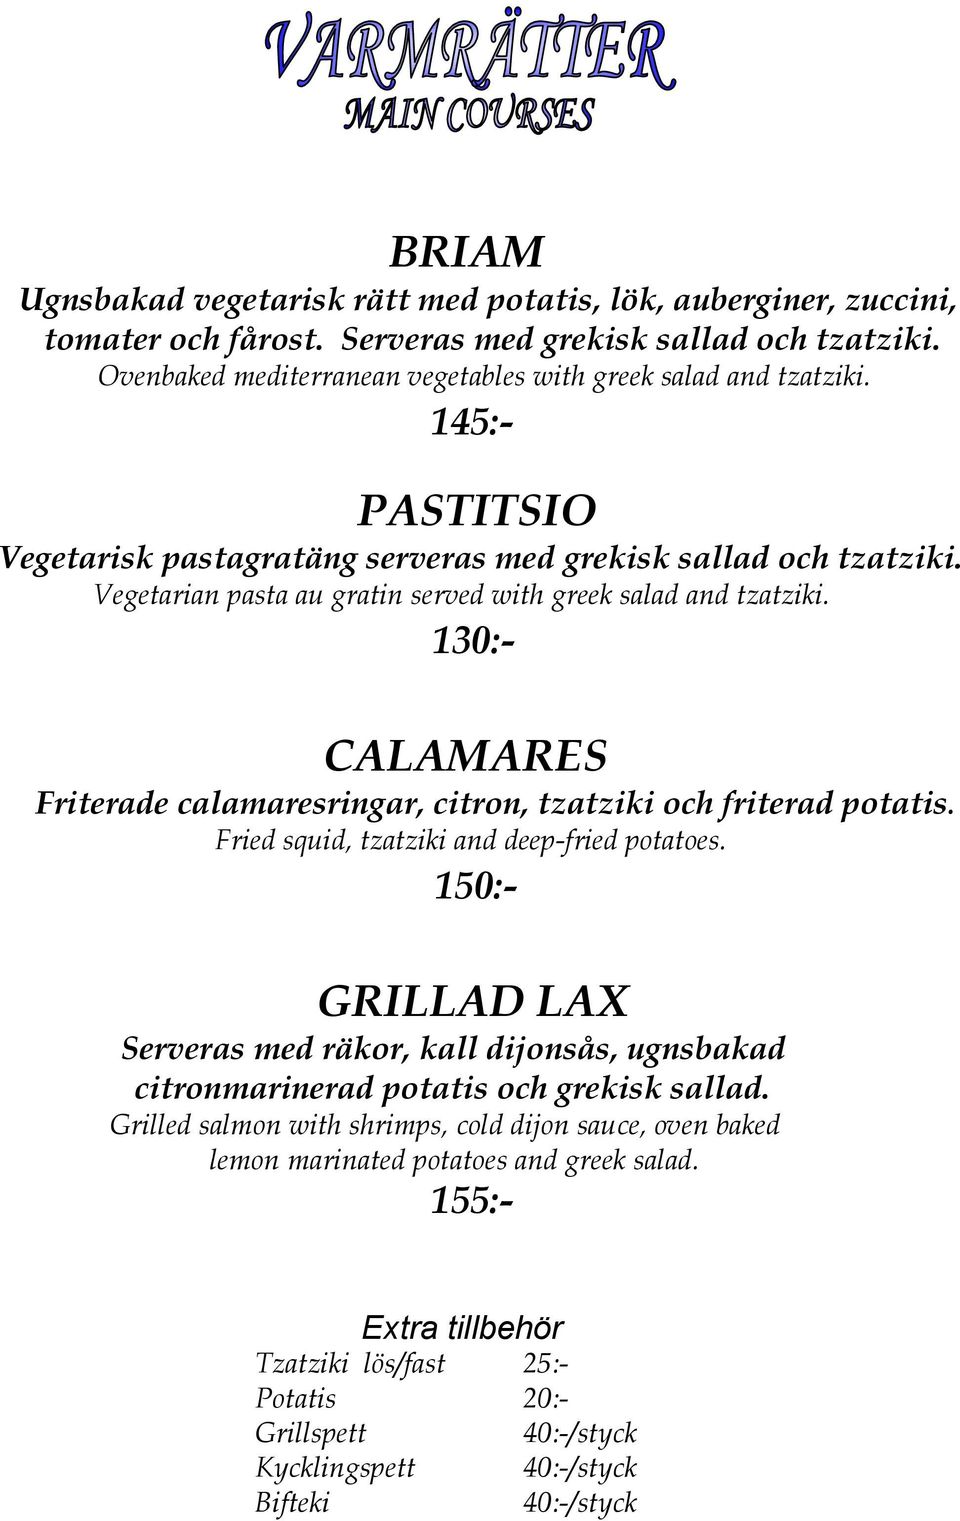 130:- CALAMARES Friterade calamaresringar, citron, tzatziki och friterad potatis. Fried squid, tzatziki and deep-fried potatoes.